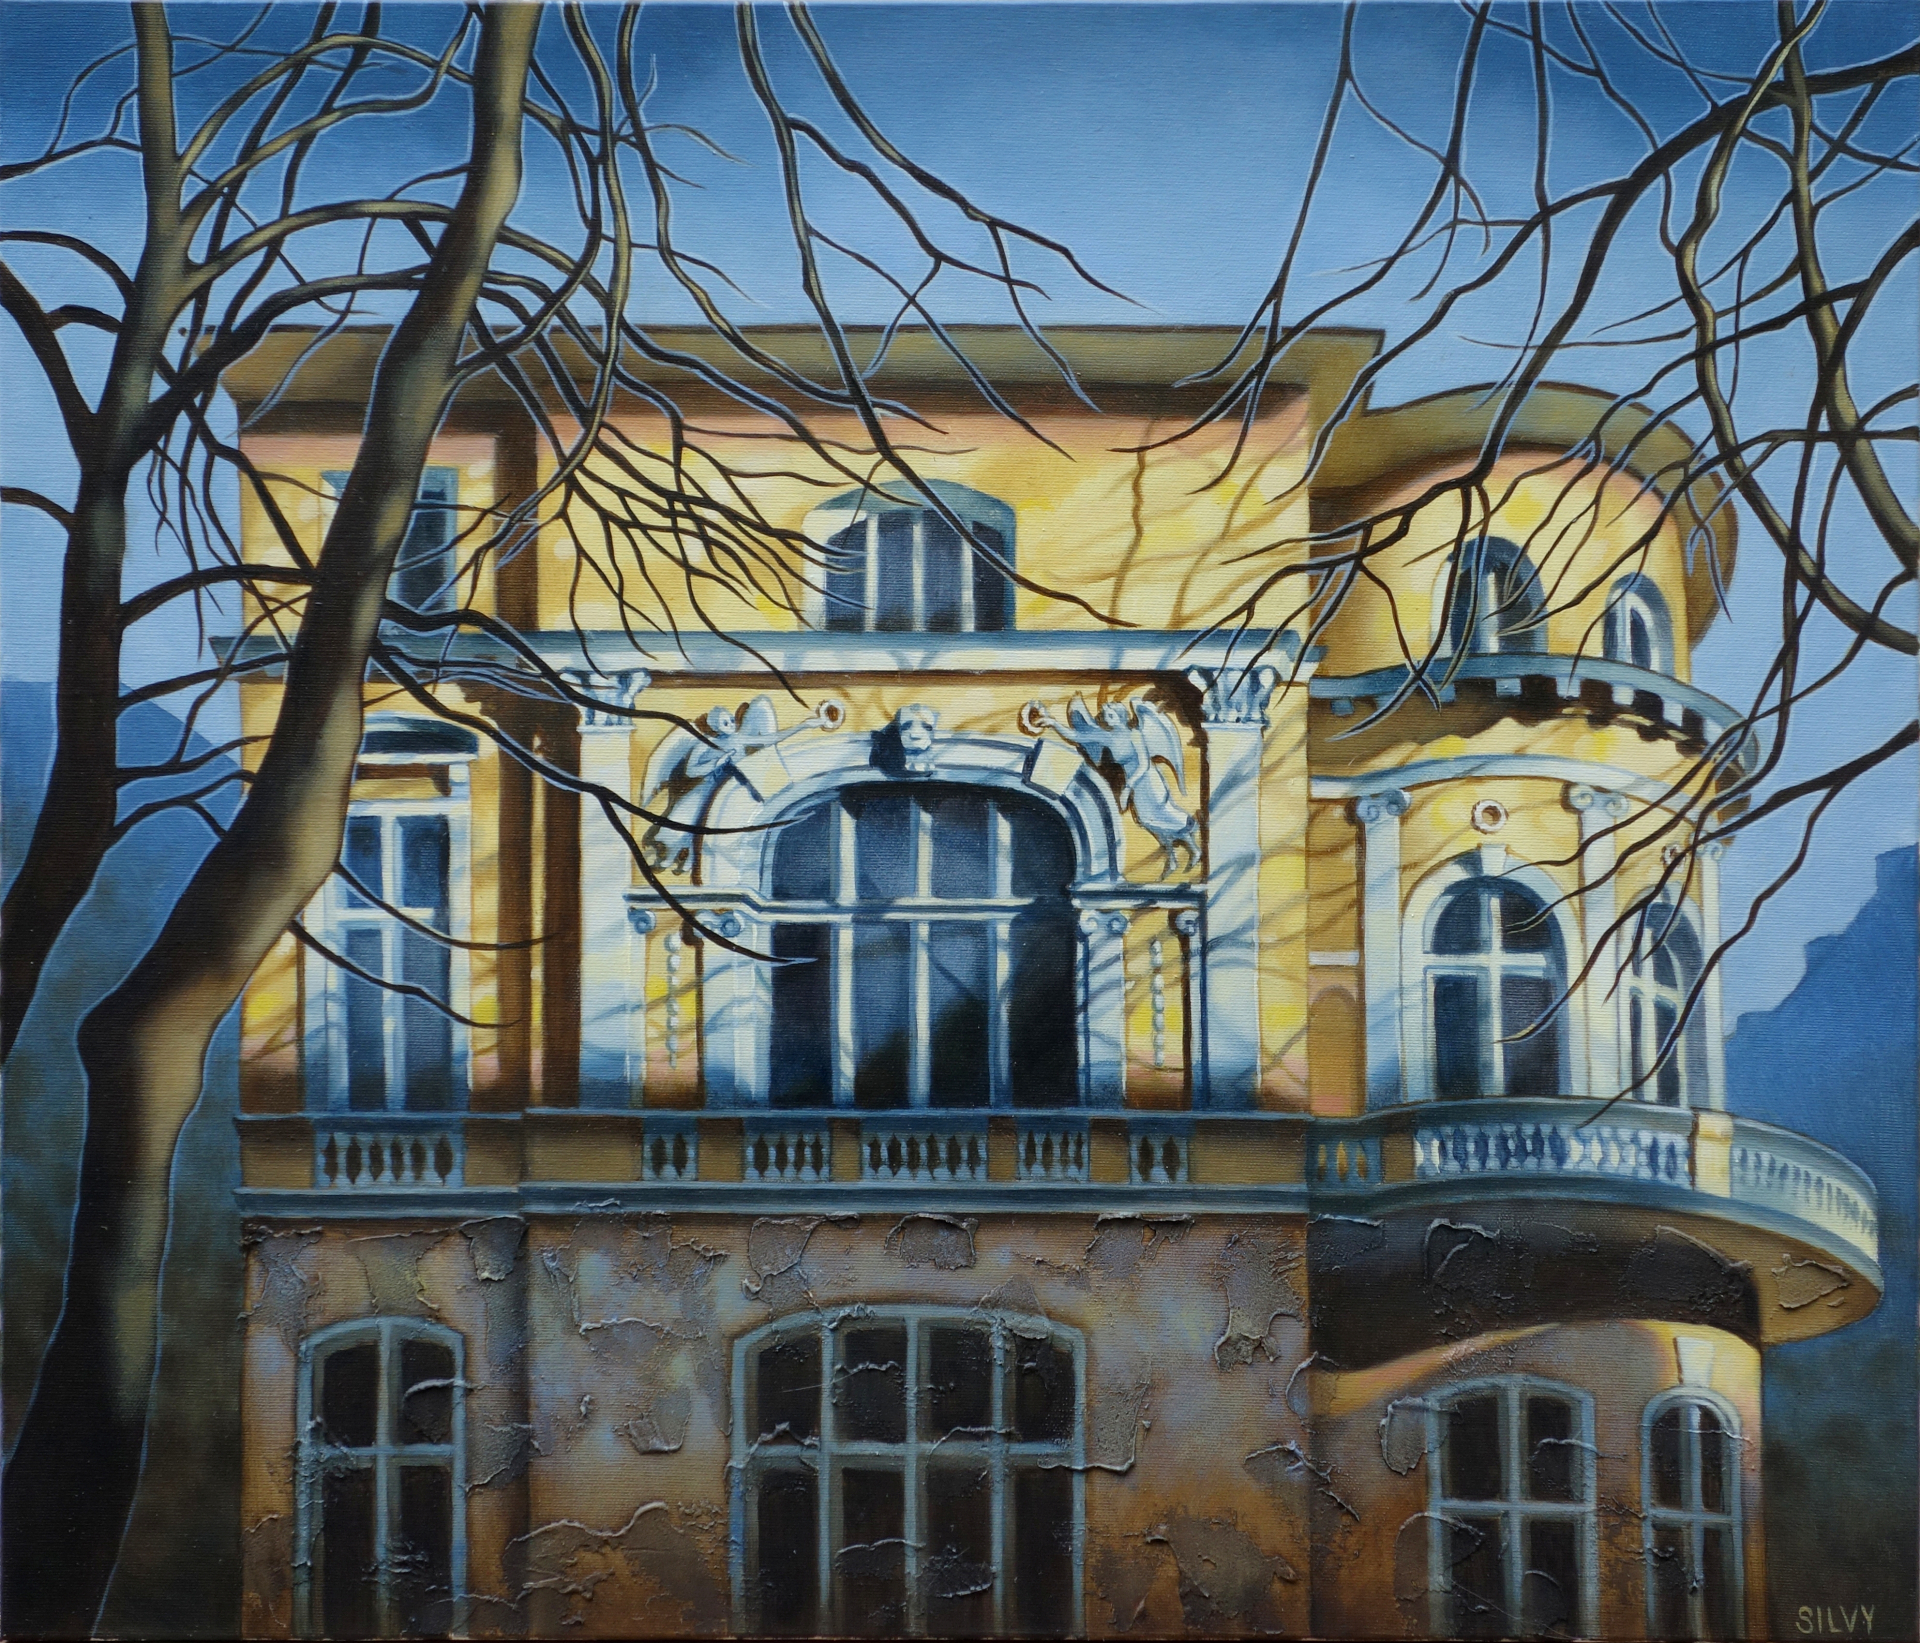 Къщите на Силви Басева могат да се разгледат до края на август, а мястото е „улица „Венелин” 32 - галерия „Класика”